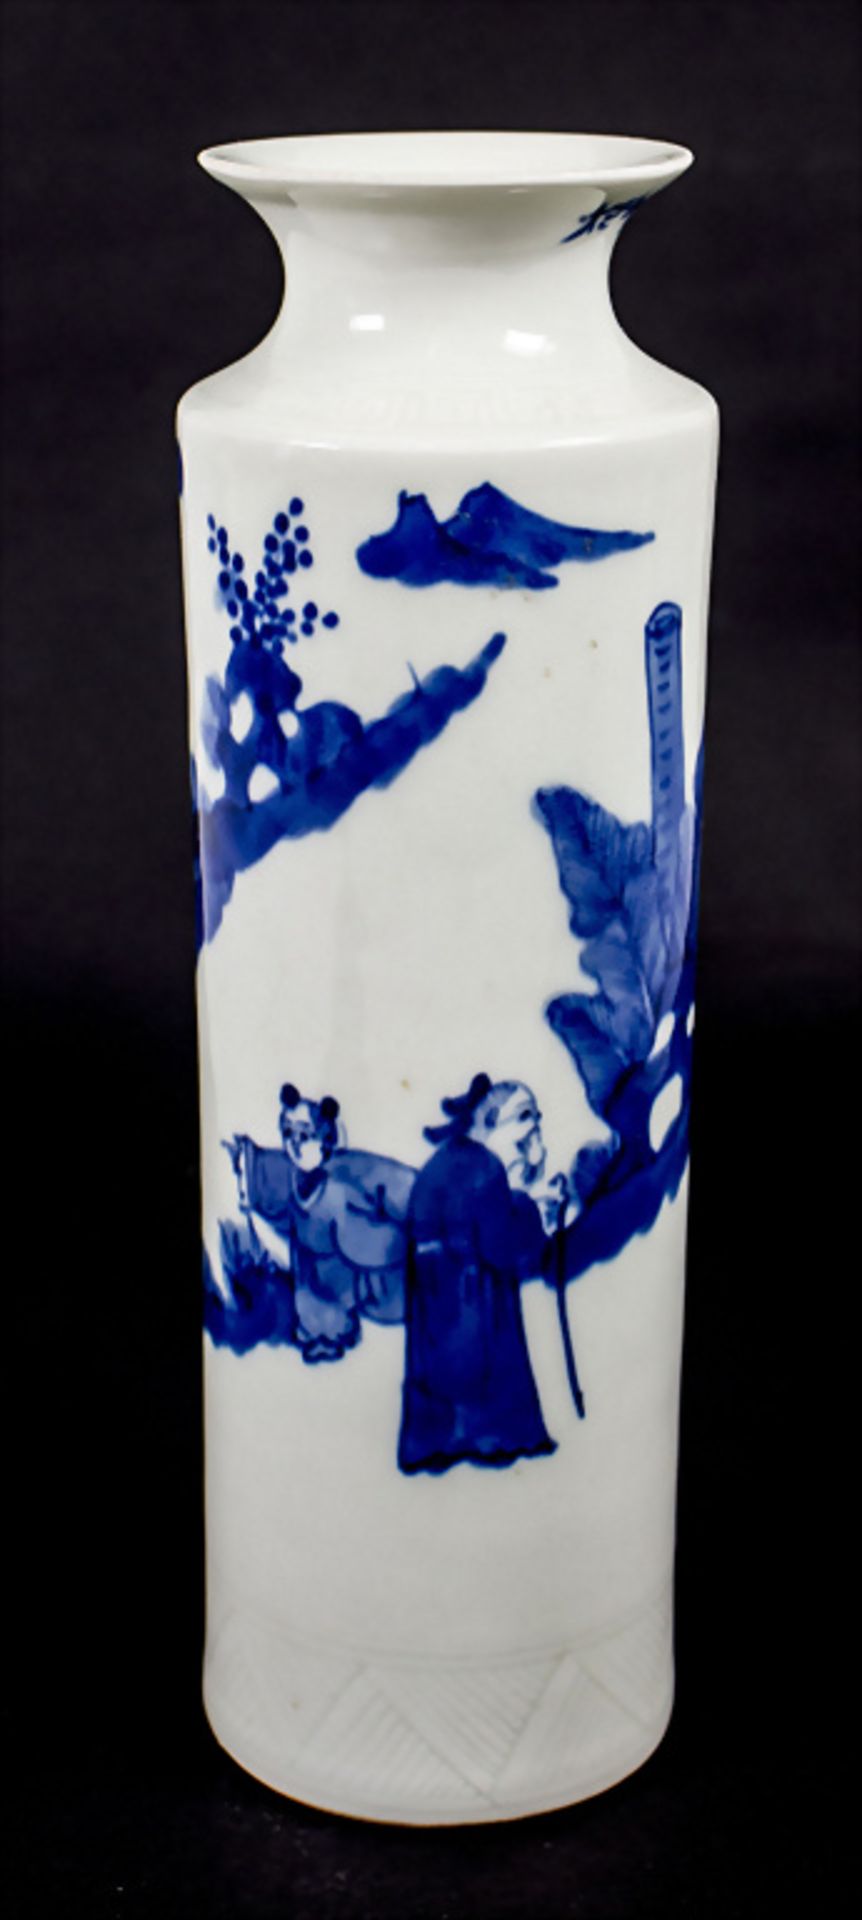 Ziervase / A decorative vase, China, Qing Dynastie (1644-1911) - Bild 3 aus 7